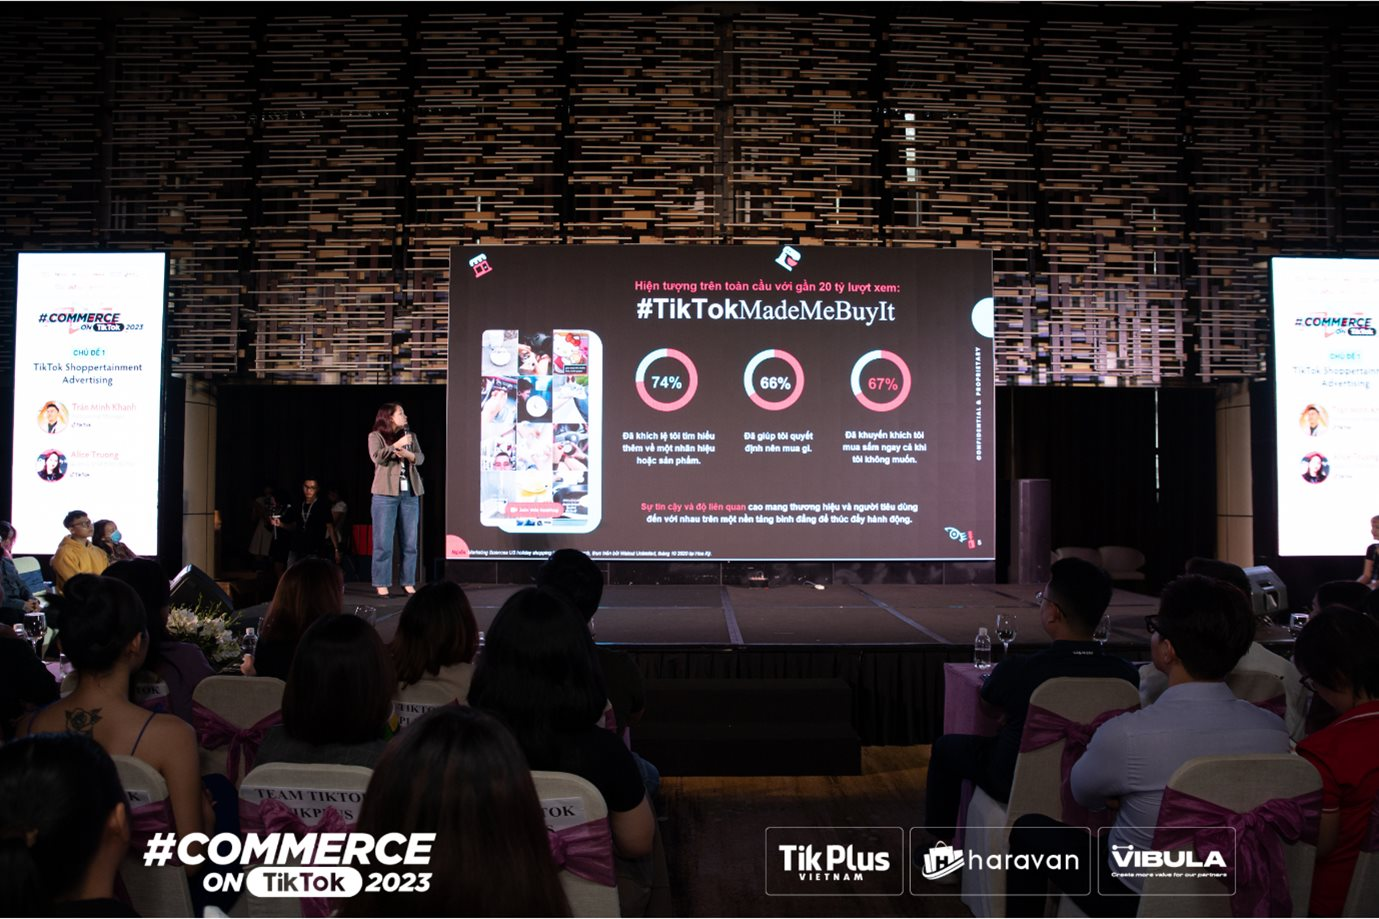 Commerce On TikTok 2023: “Bán hàng kết hợp trải nghiệm giải trí” là chìa khóa thành công - Ảnh 2.